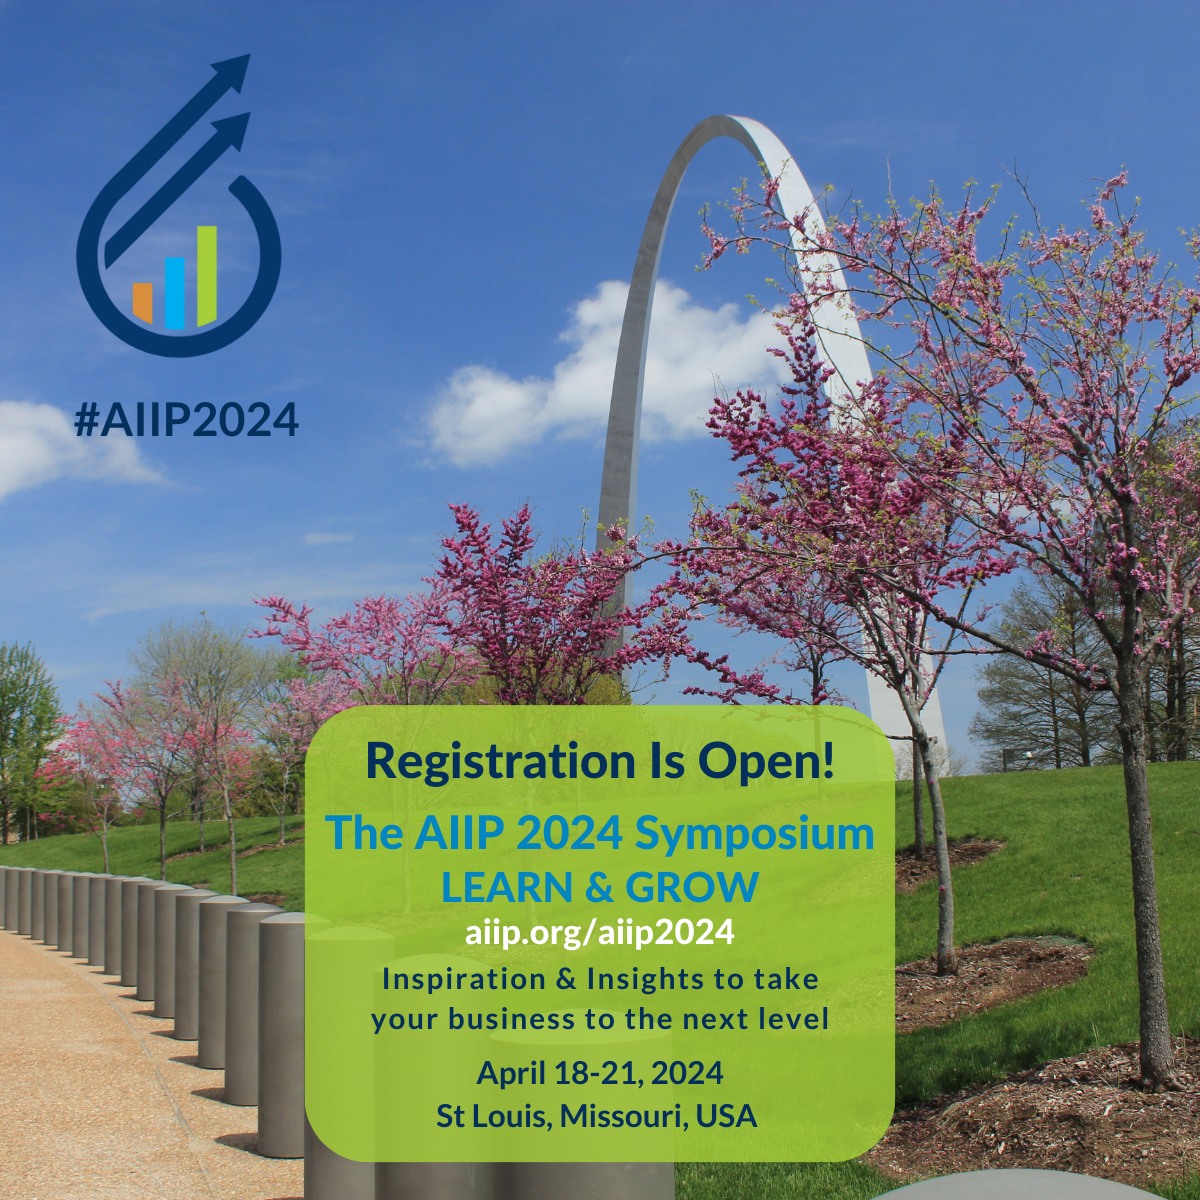 AIIP 2024 Symposium:  Learn & Grow